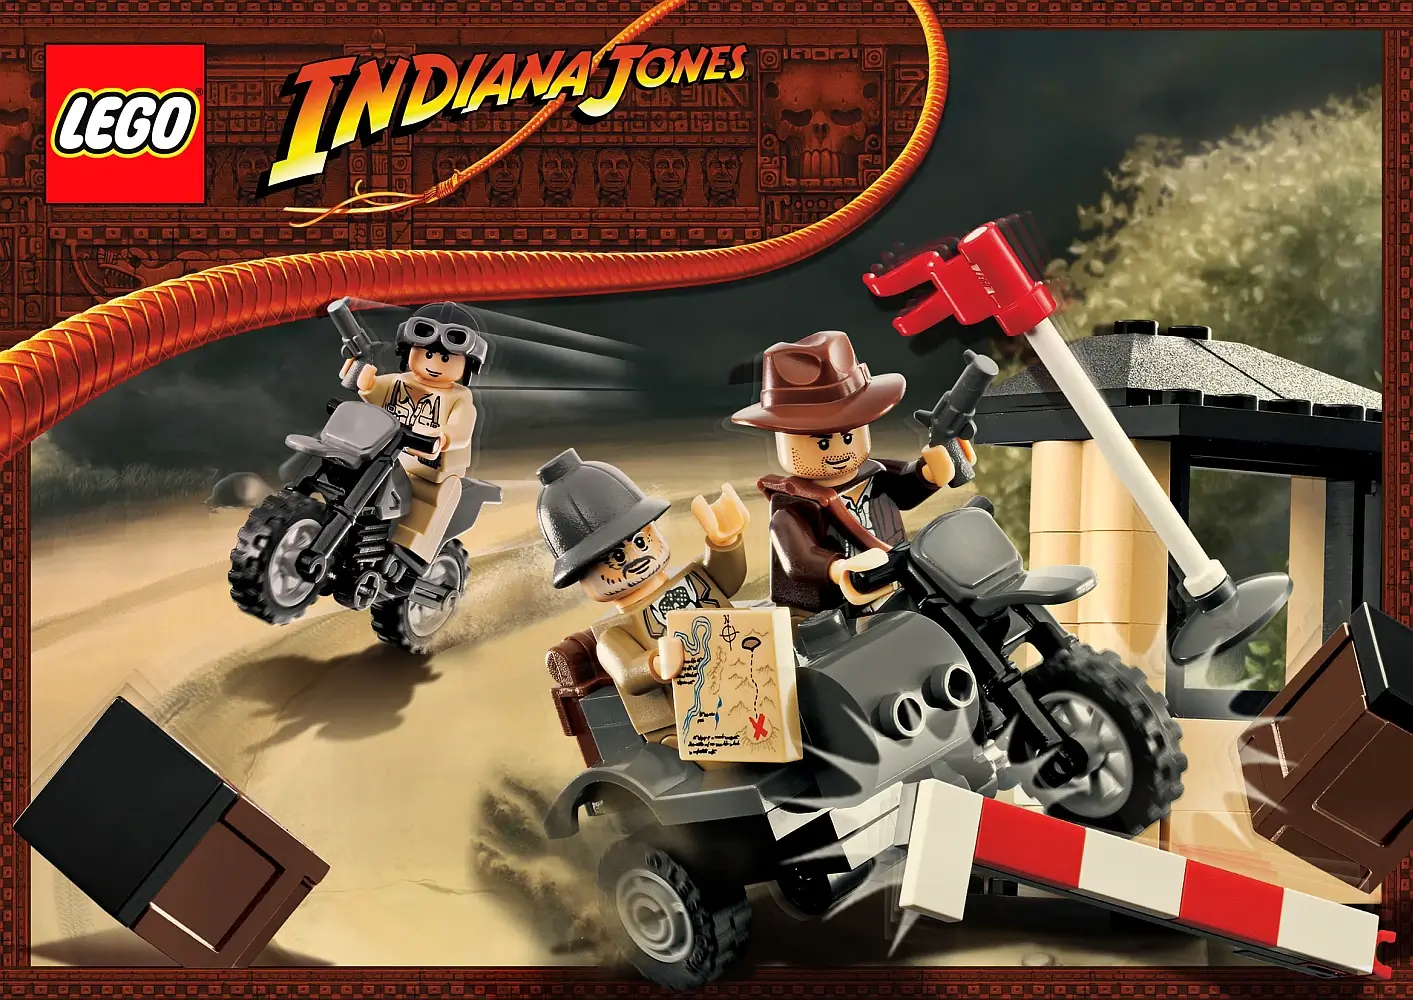 Pudełko zestawu 7620 z serii Indiana Jones – wyścig motocyklowy